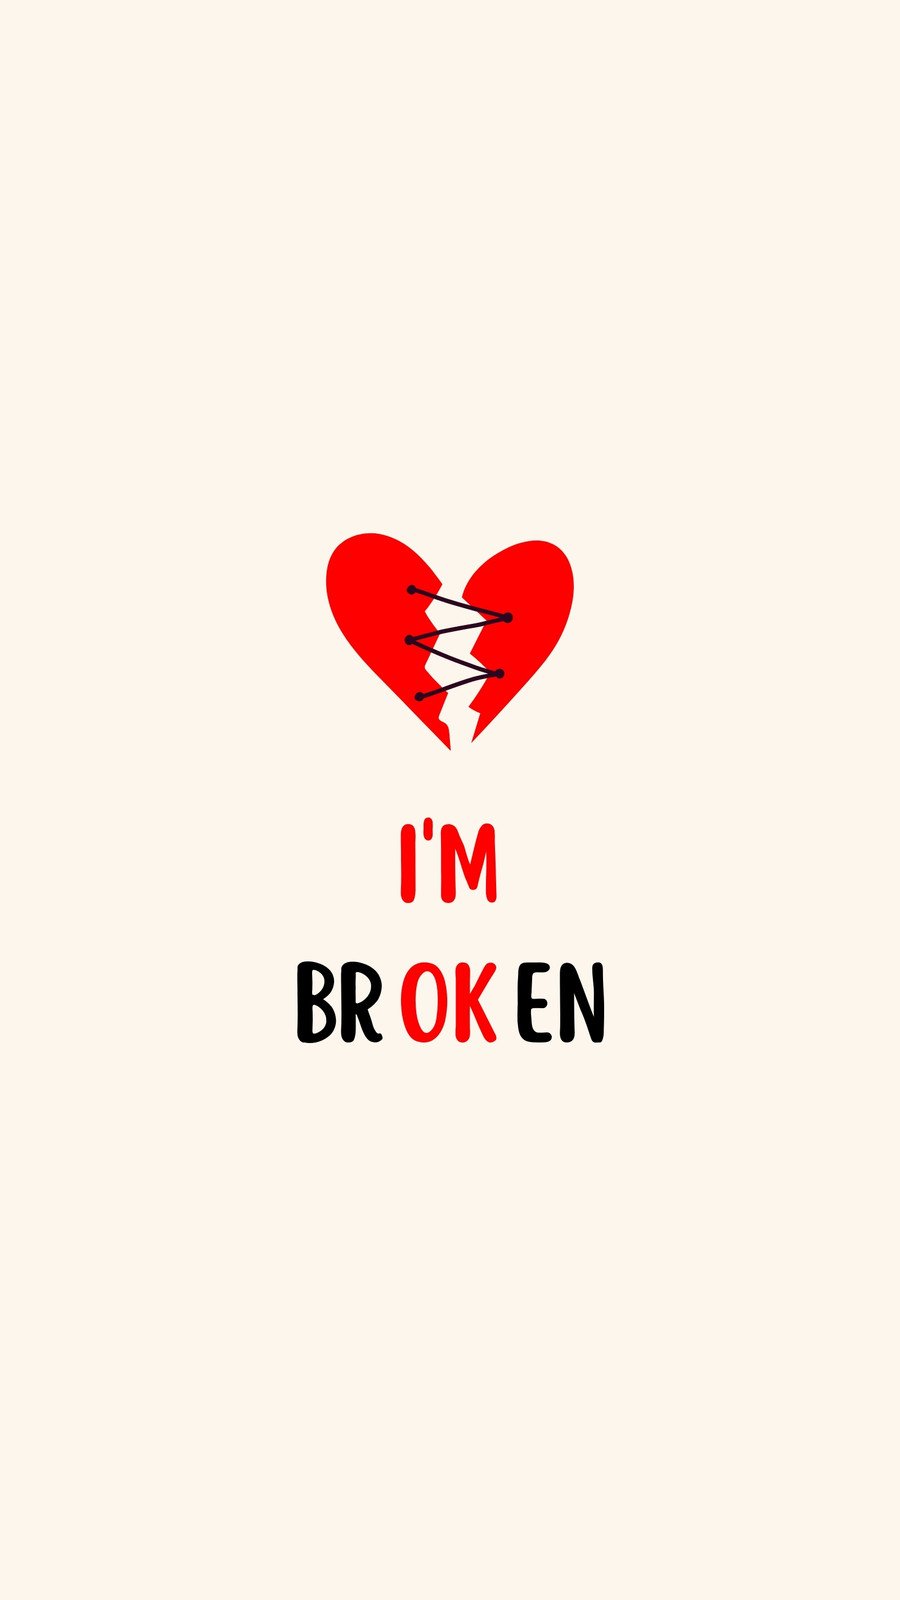 100+] Broken Heart Iphone Wallpapers